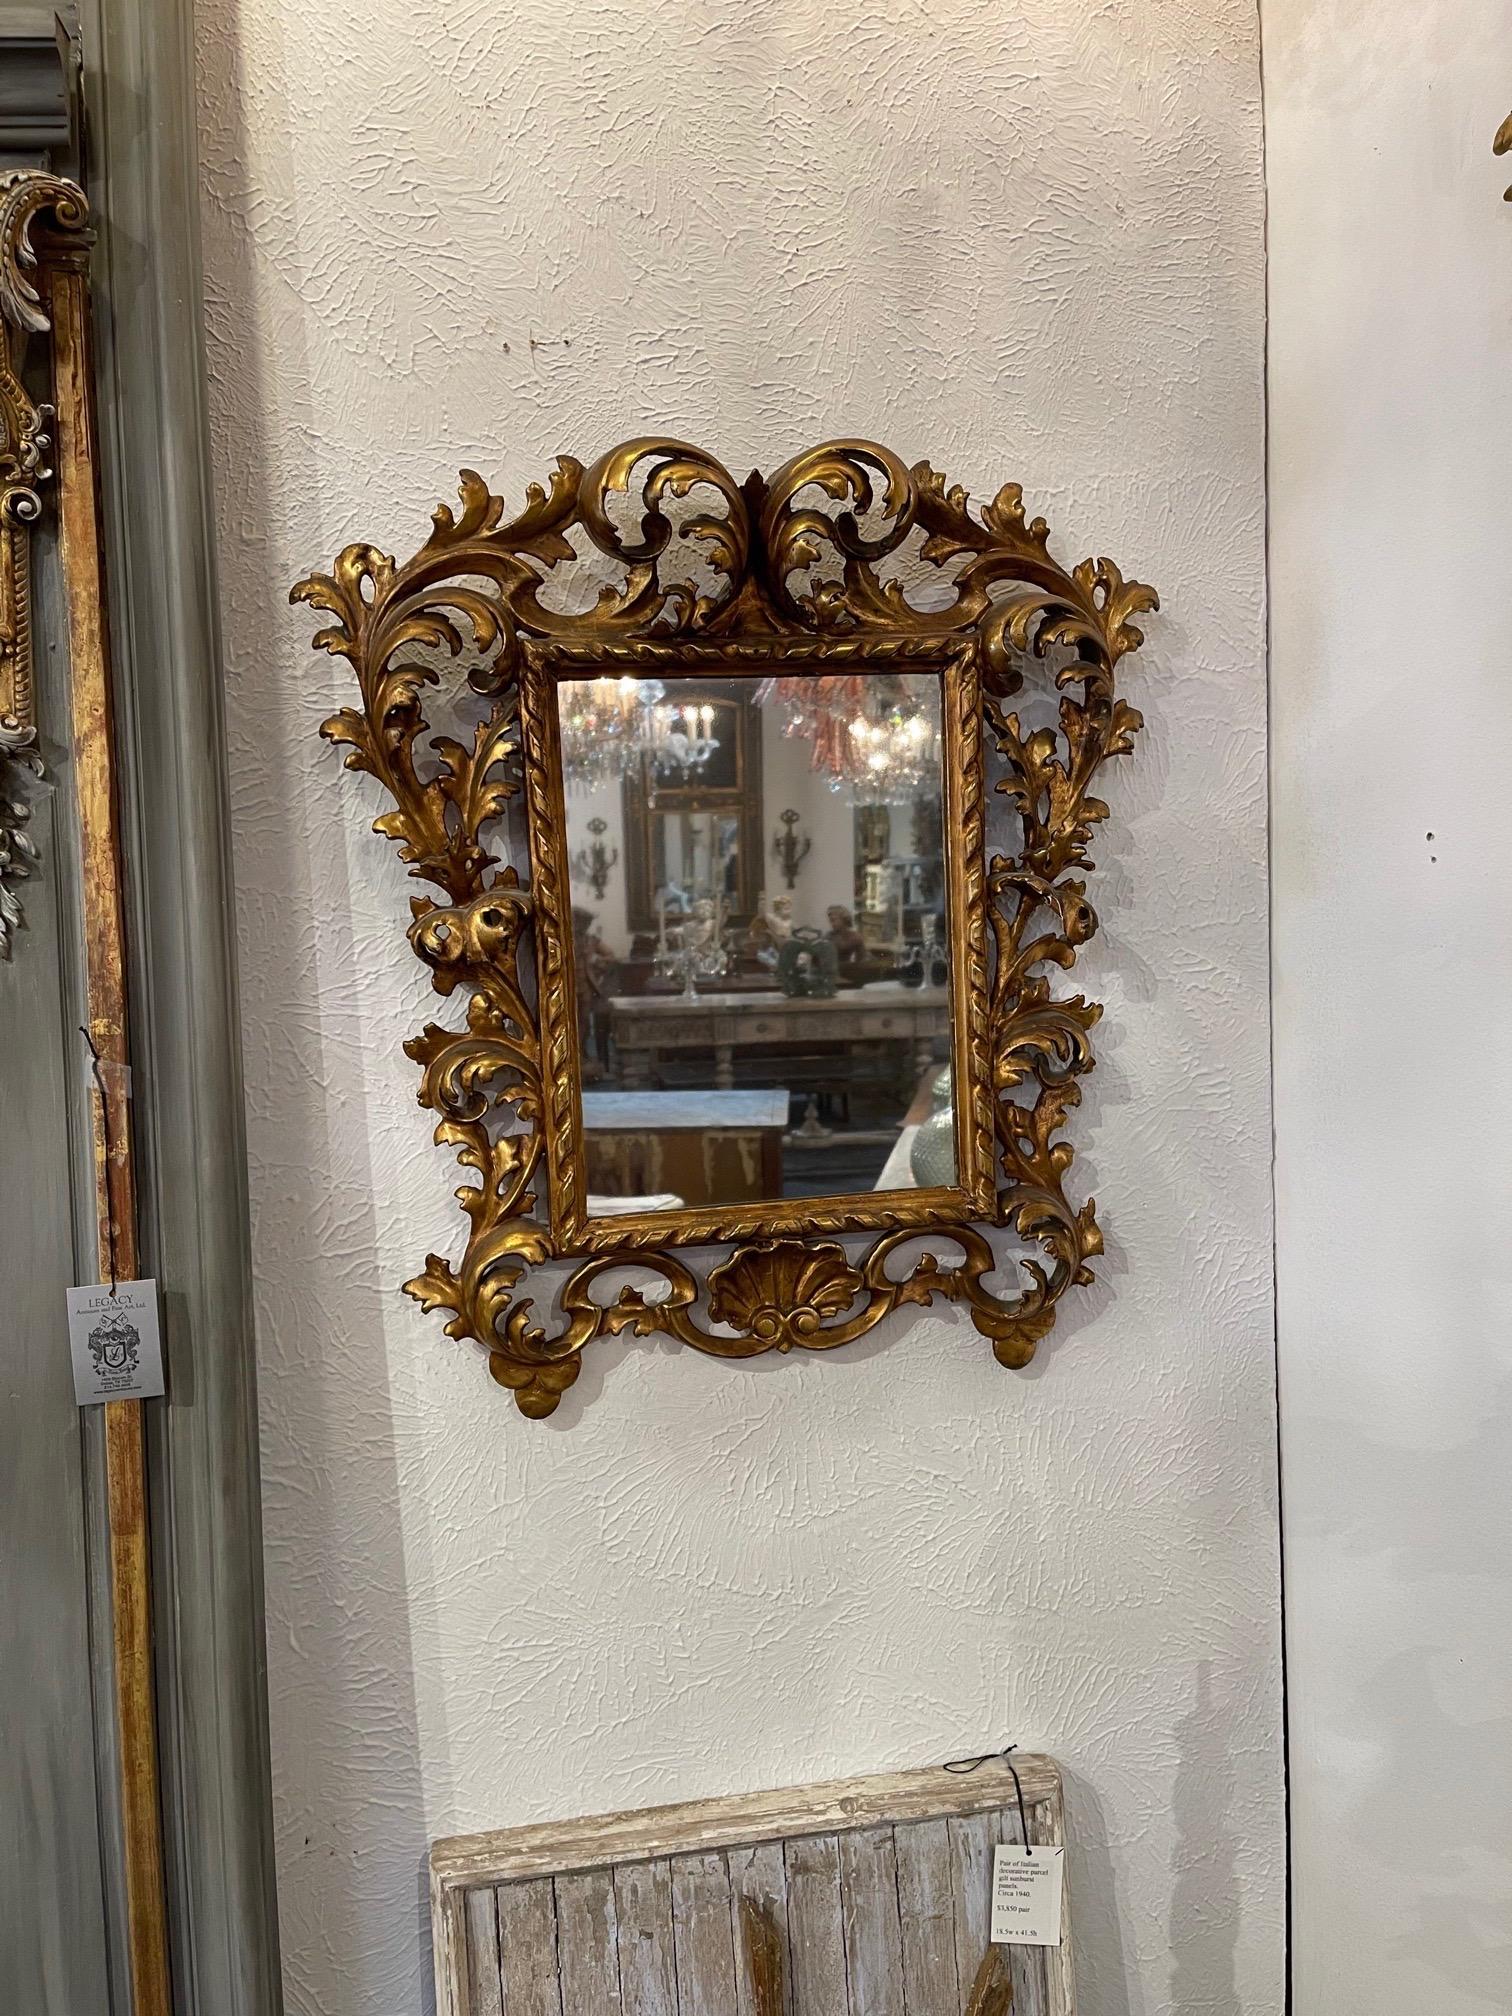 Exquis miroir italien en bois doré du 18e siècle provenant de Florence. Fabuleux design sculpté et élaboré. Tellement élégante !